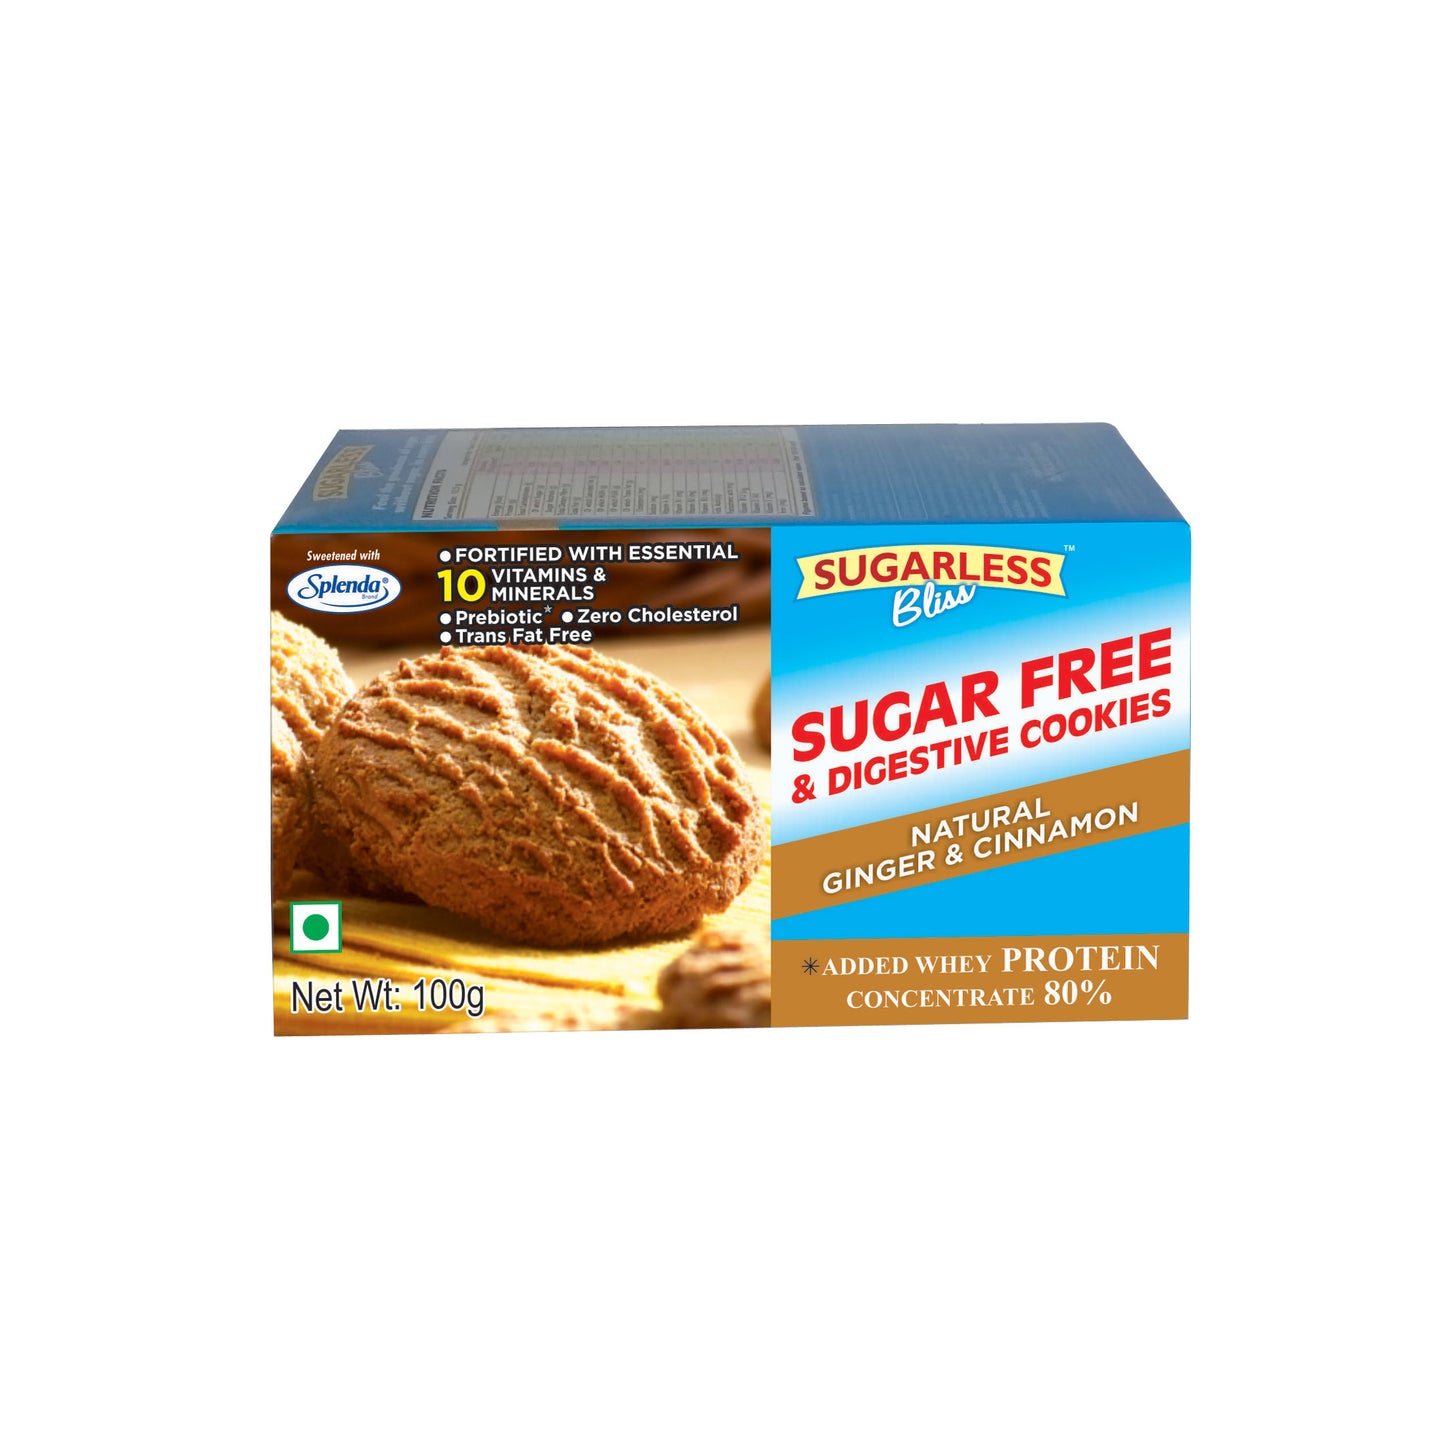 Sugar Free & Digestive Cookies - Ginger & Cinnamon - 100g